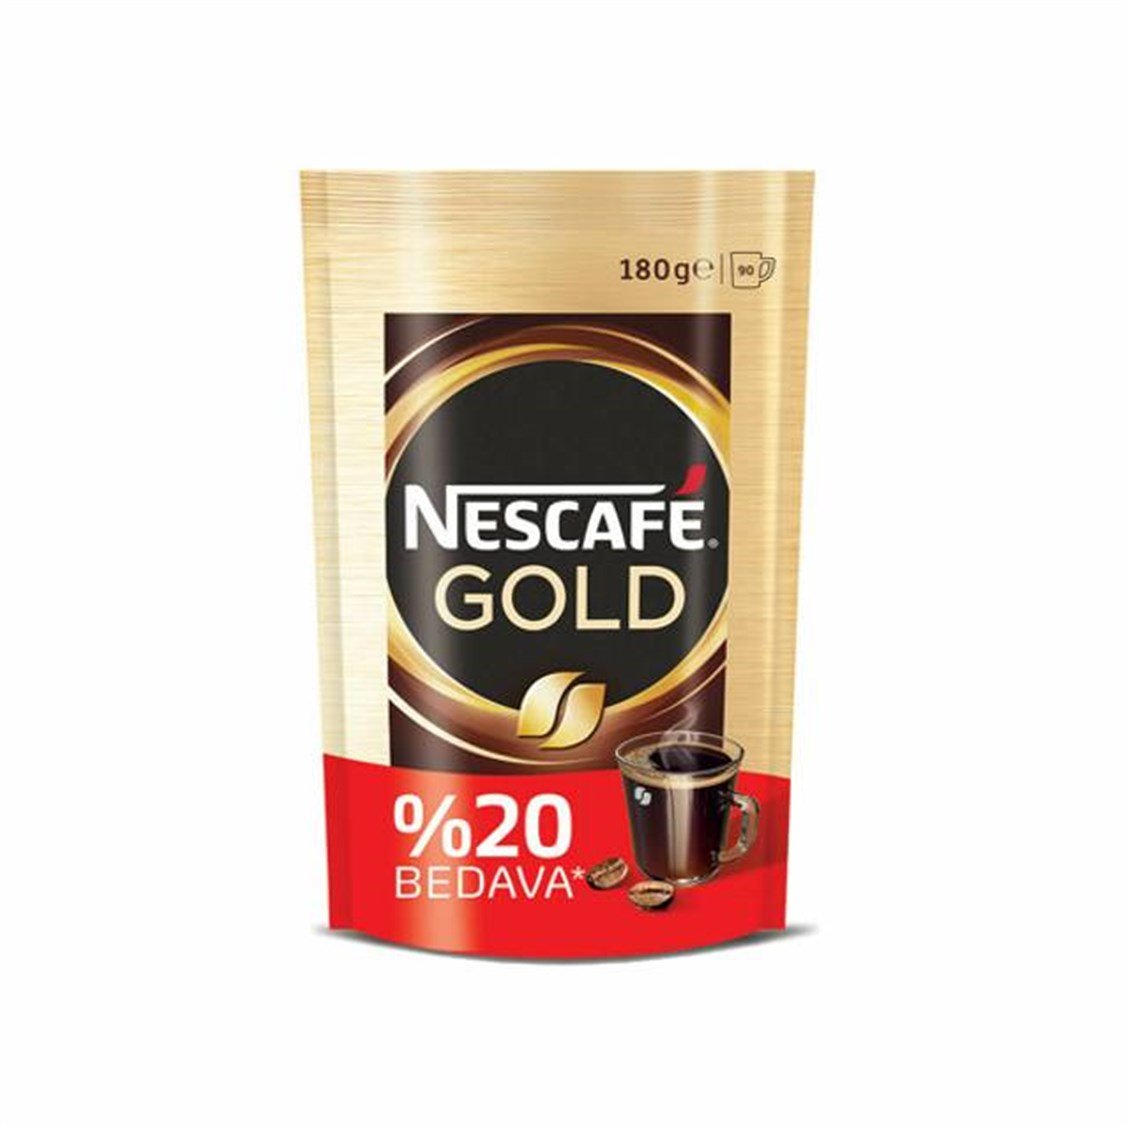 Nescafe Gold Eko Paket Çözünebilir Kahve 180 Gr - Onur Market